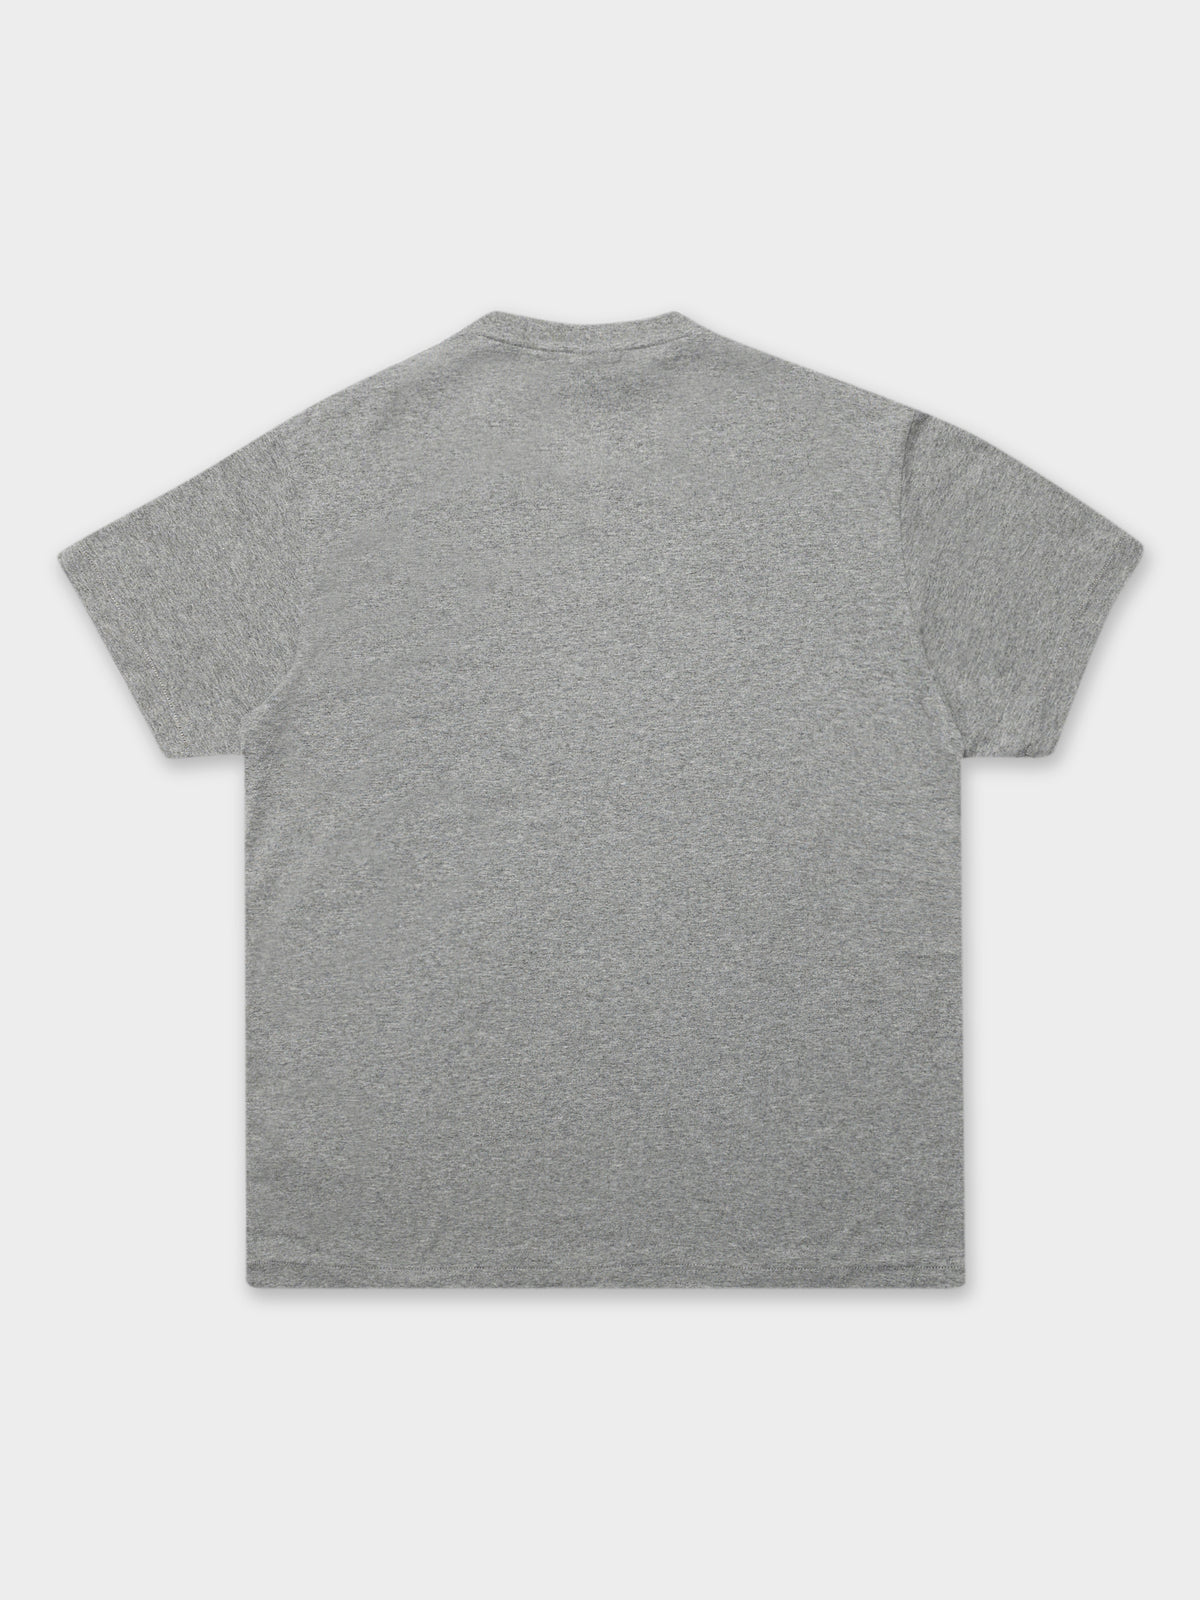 Sox T-Shirt in Grey Marle